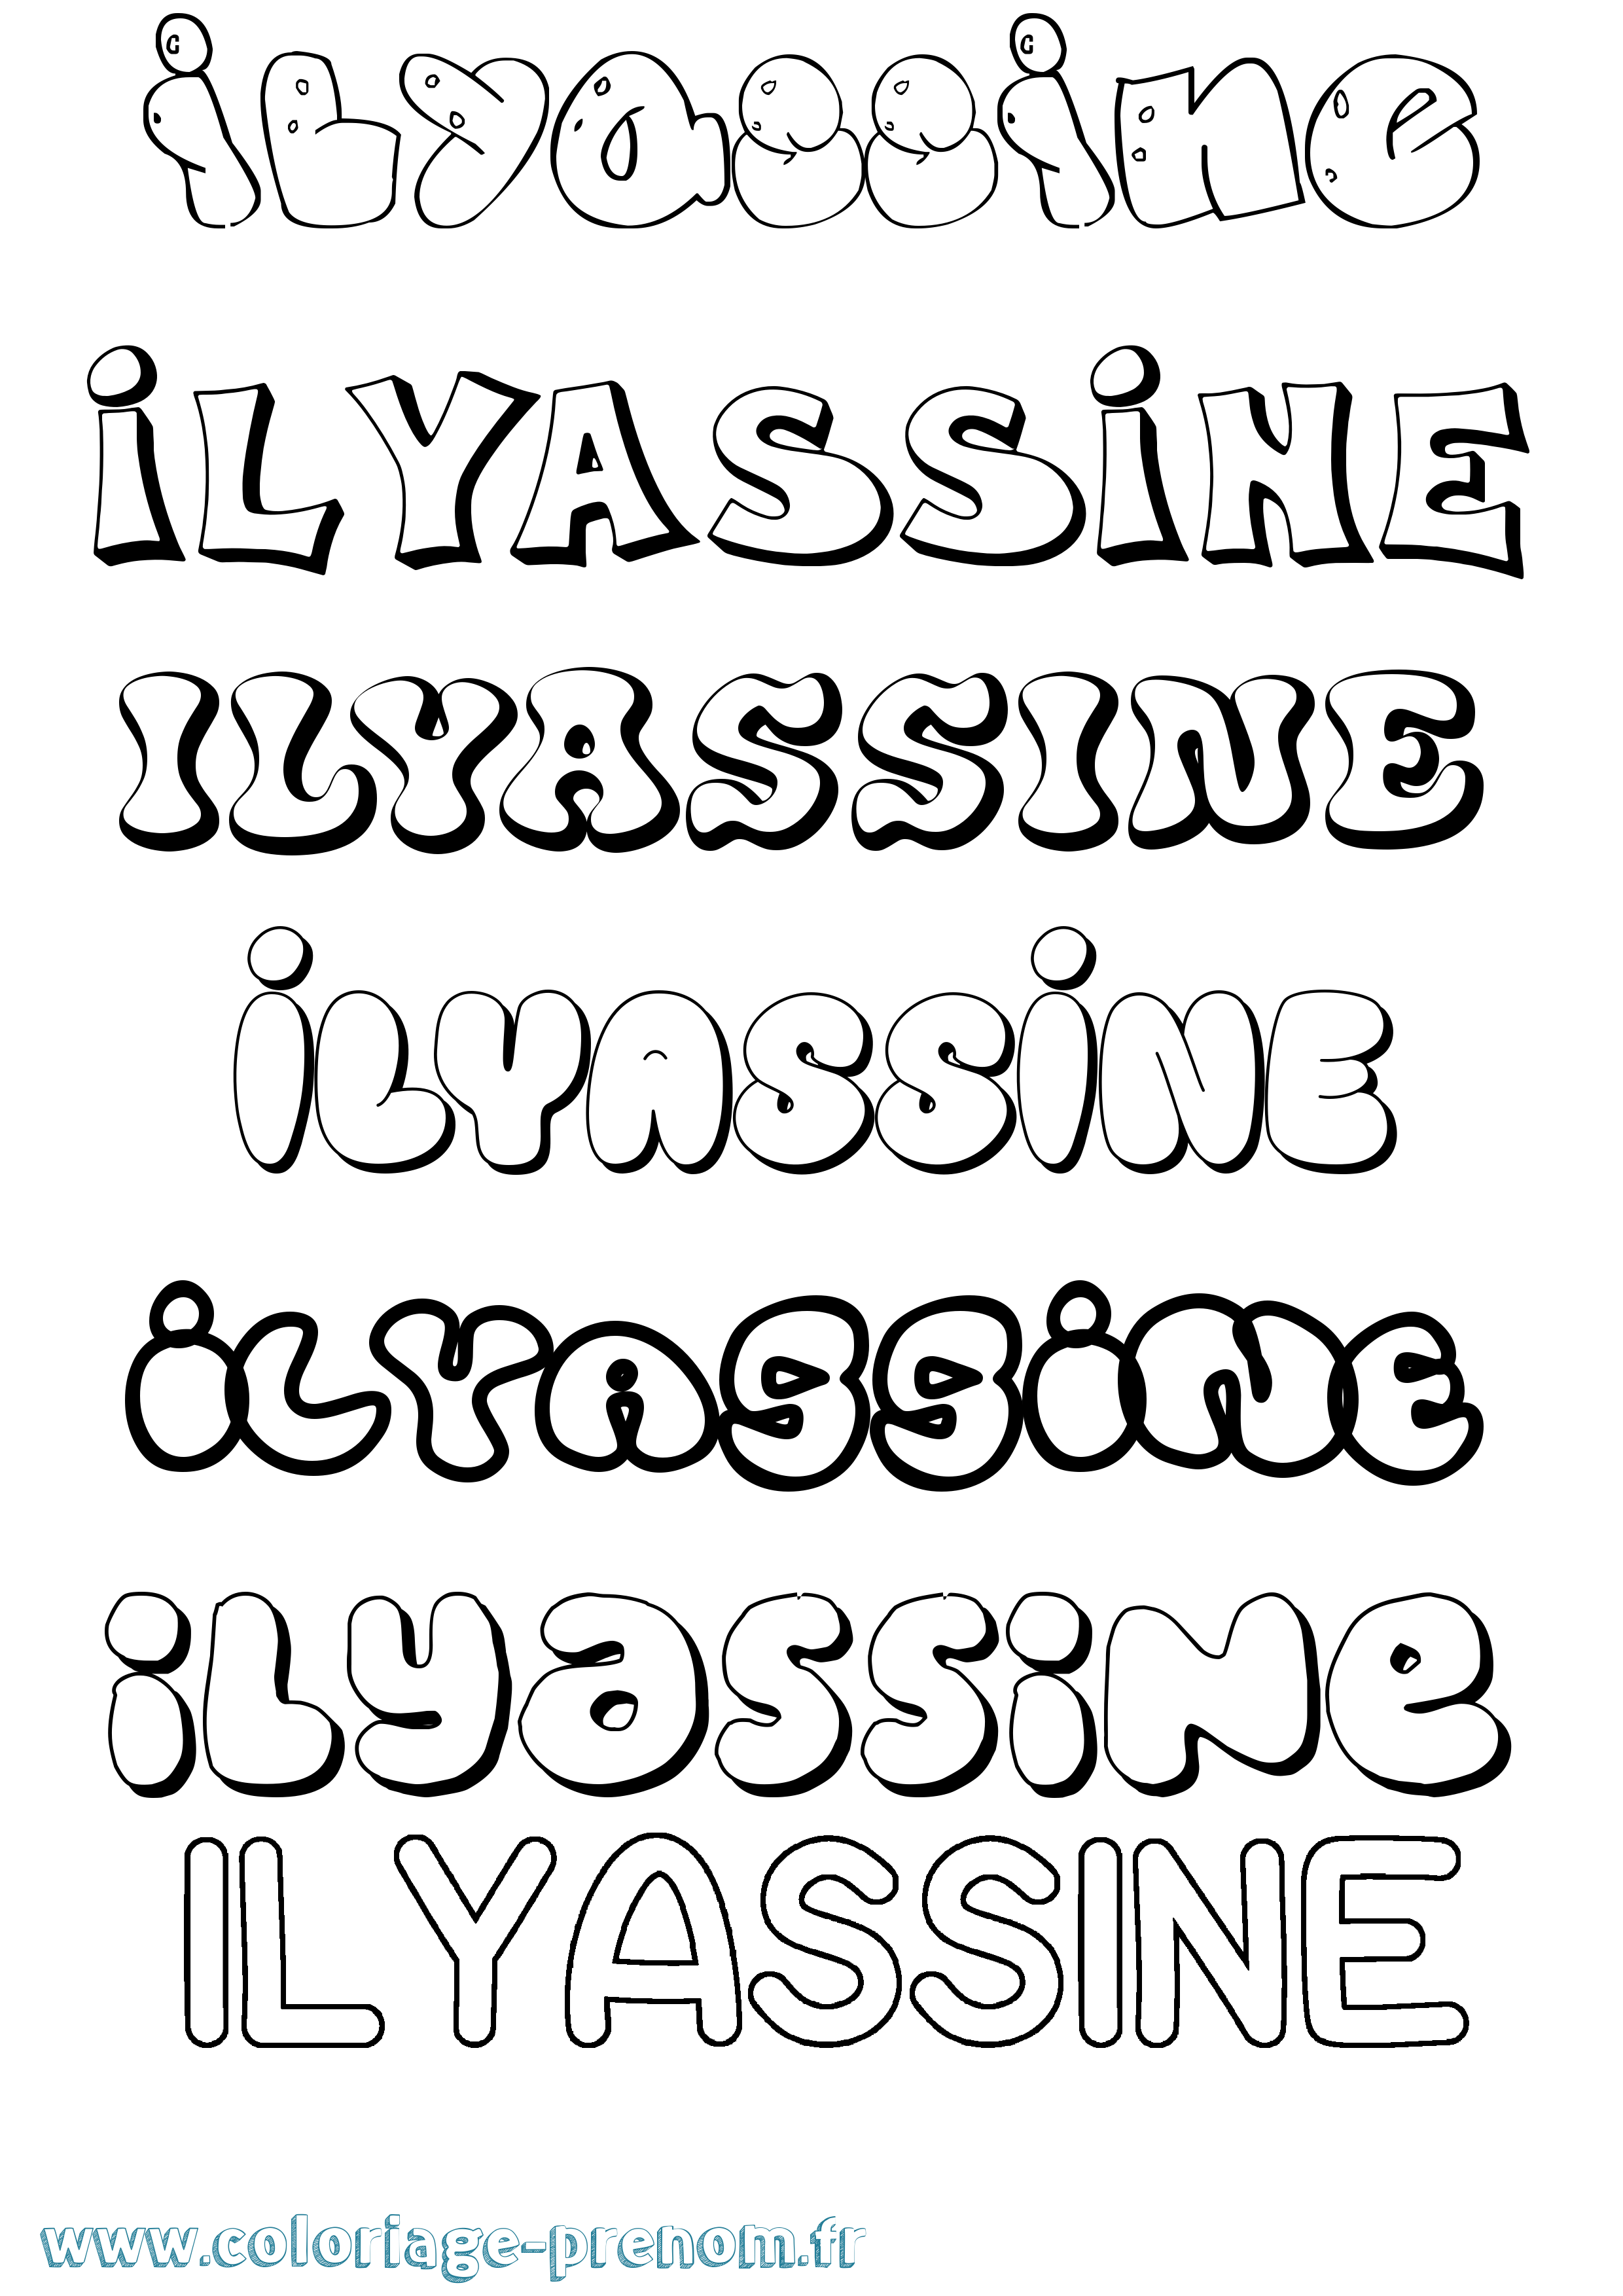 Coloriage prénom Ilyassine Bubble